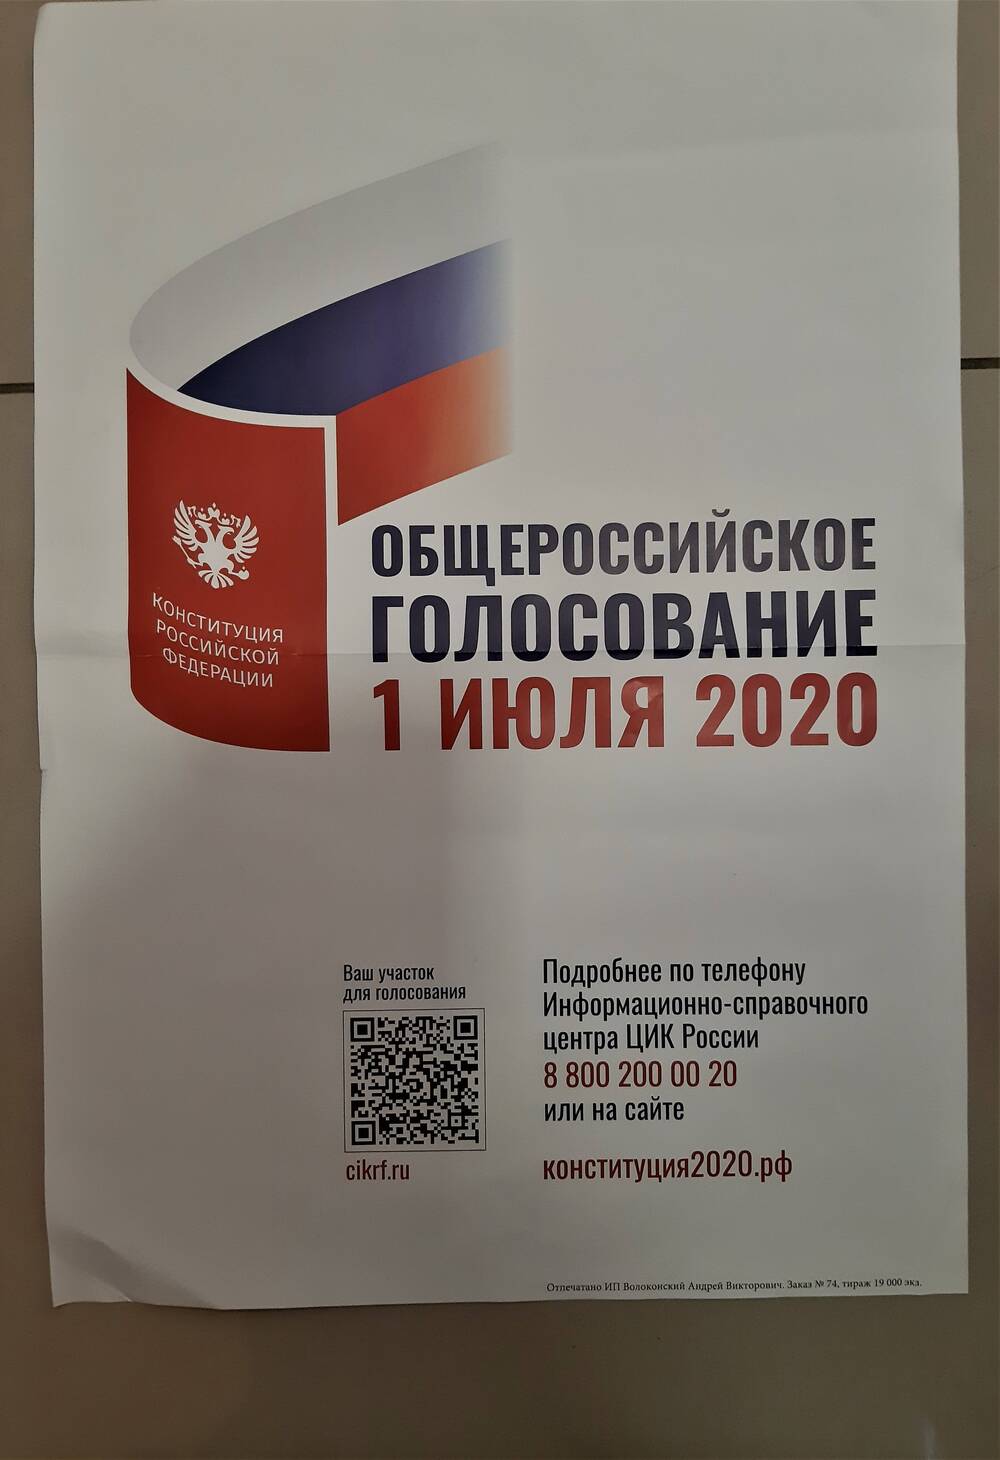 Плакат Общероссийское голосование 1 июля 2020 года.